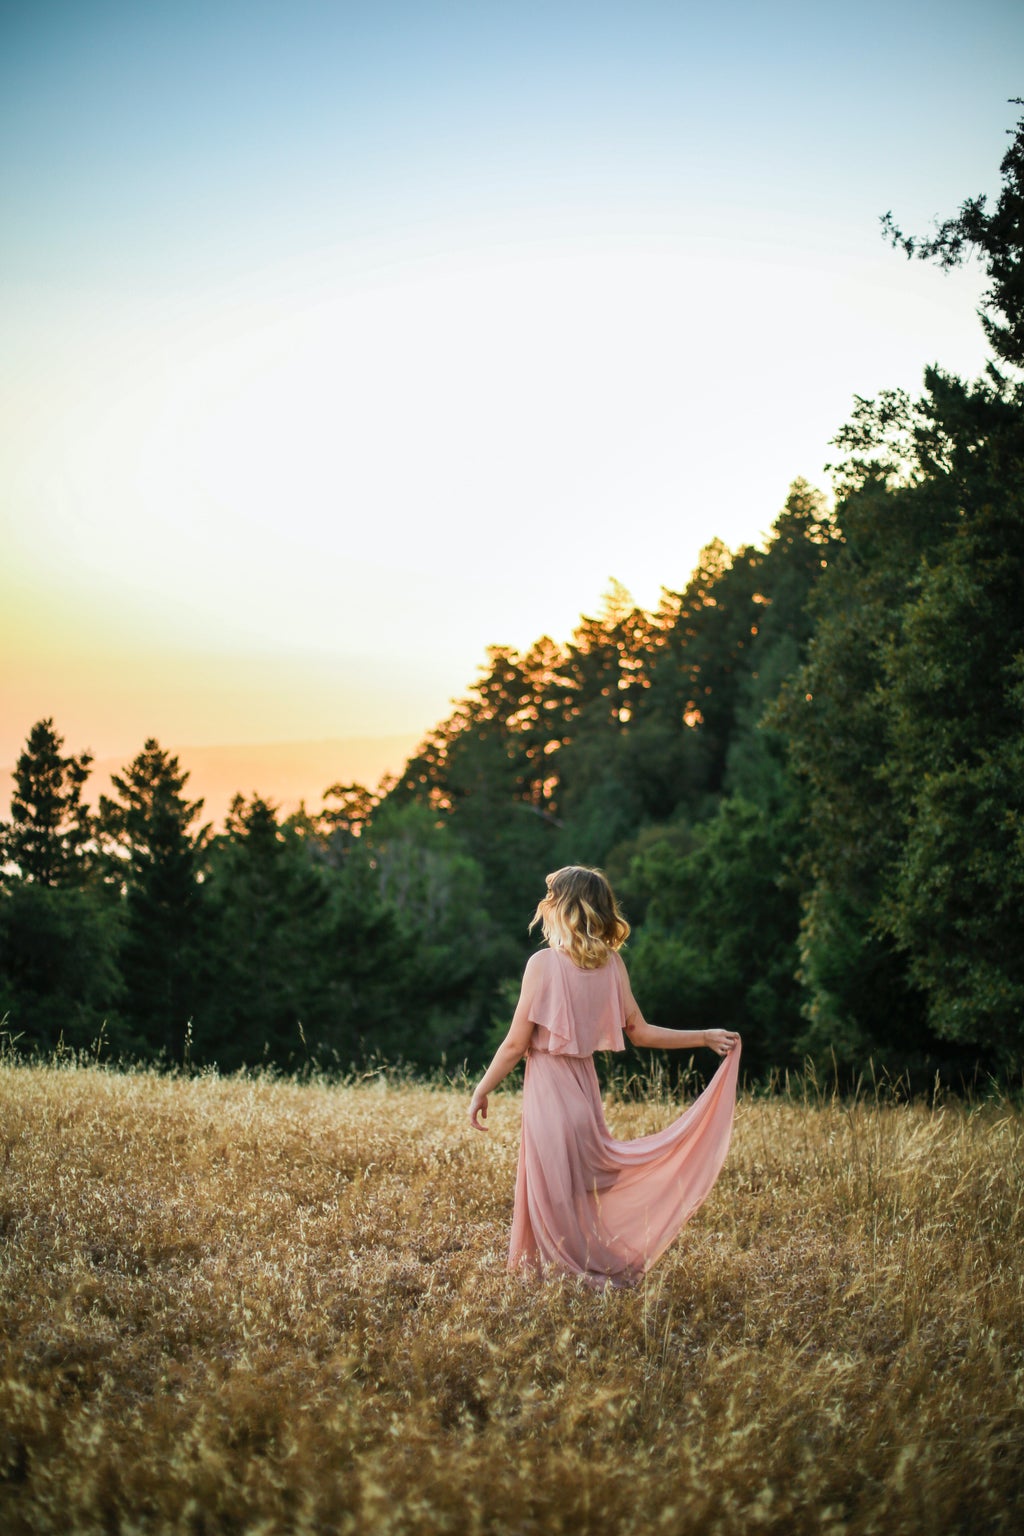 Girl in a long pink dress in a field.